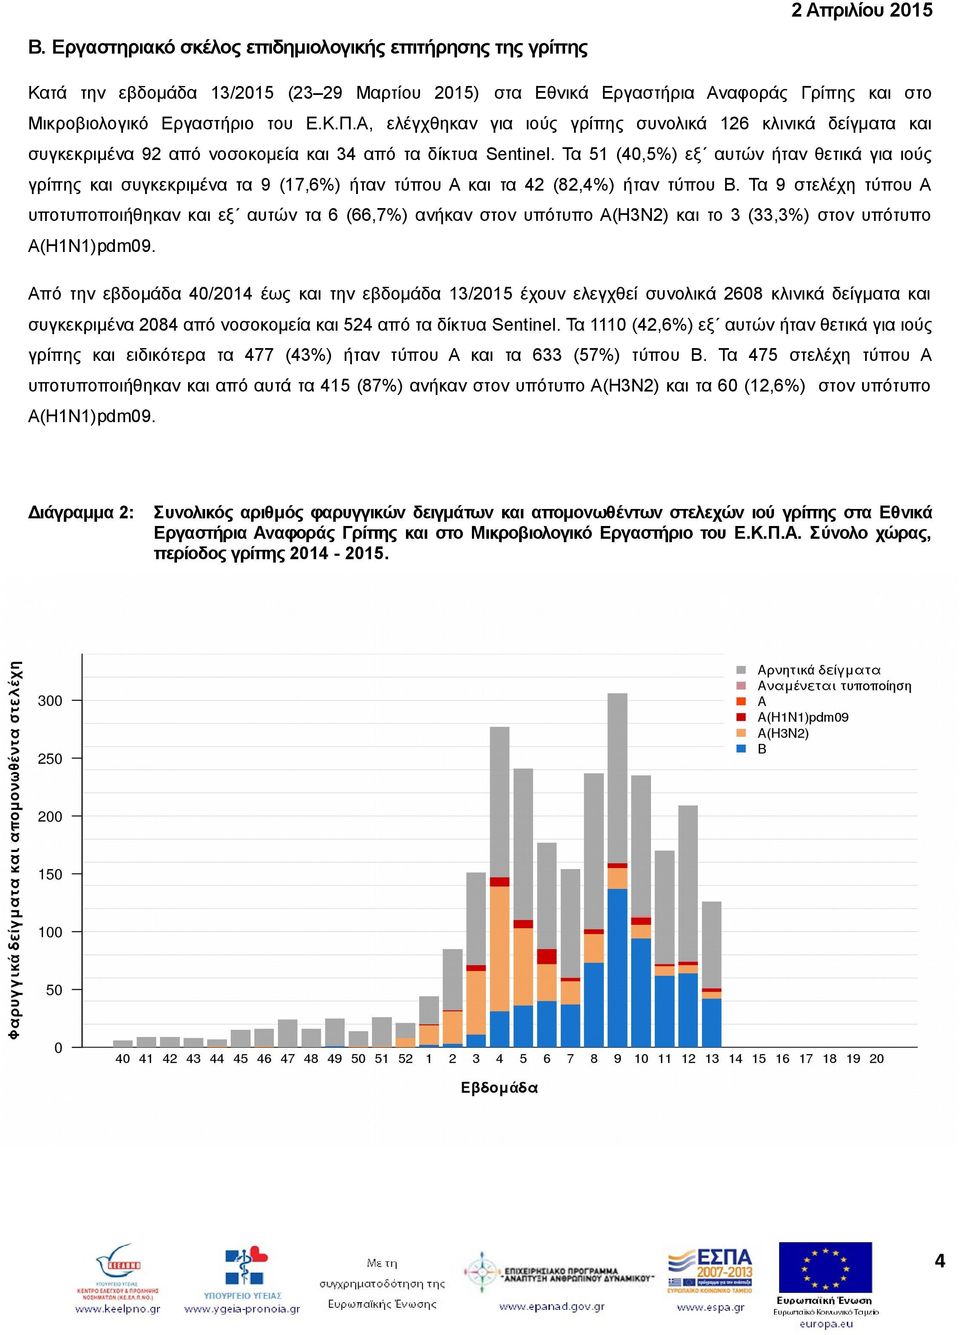 Τα 51 (40,5%) εξ αυτών ήταν θετικά για ιούς γρίπης και συγκεκριμένα τα 9 (17,6%) ήταν τύπου Α και τα 42 (82,4%) ήταν τύπου Β.